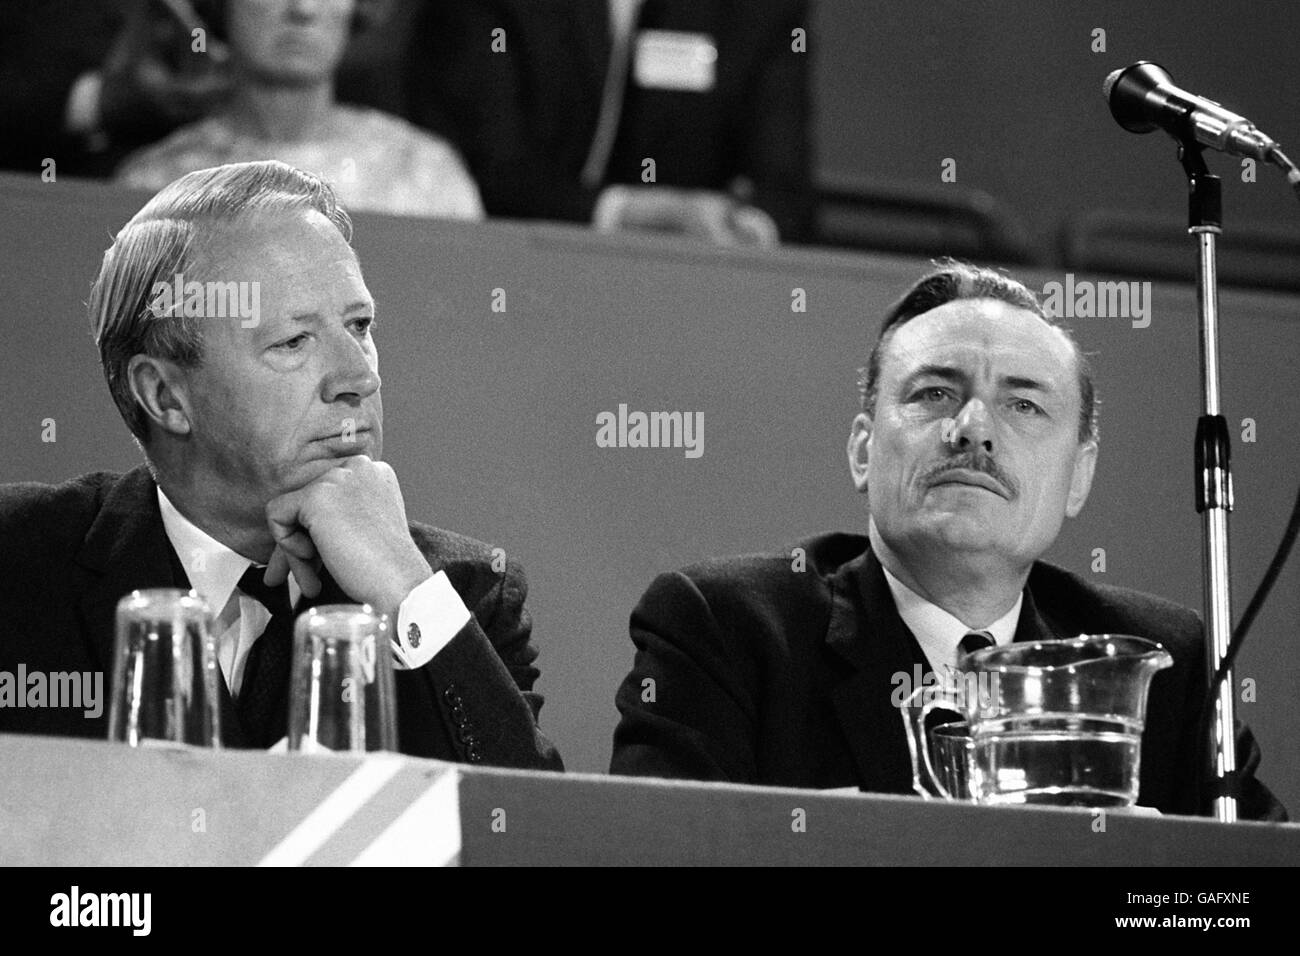 Il leader conservatore del partito, Edward Heath, (a sinistra) il M.P. di Bexley, in atmosfera riflessiva, in compagnia del collega Tory, Enoch Powell, il M.P. di Wolverhampton sud-occidentale, Staffordshire. Foto Stock